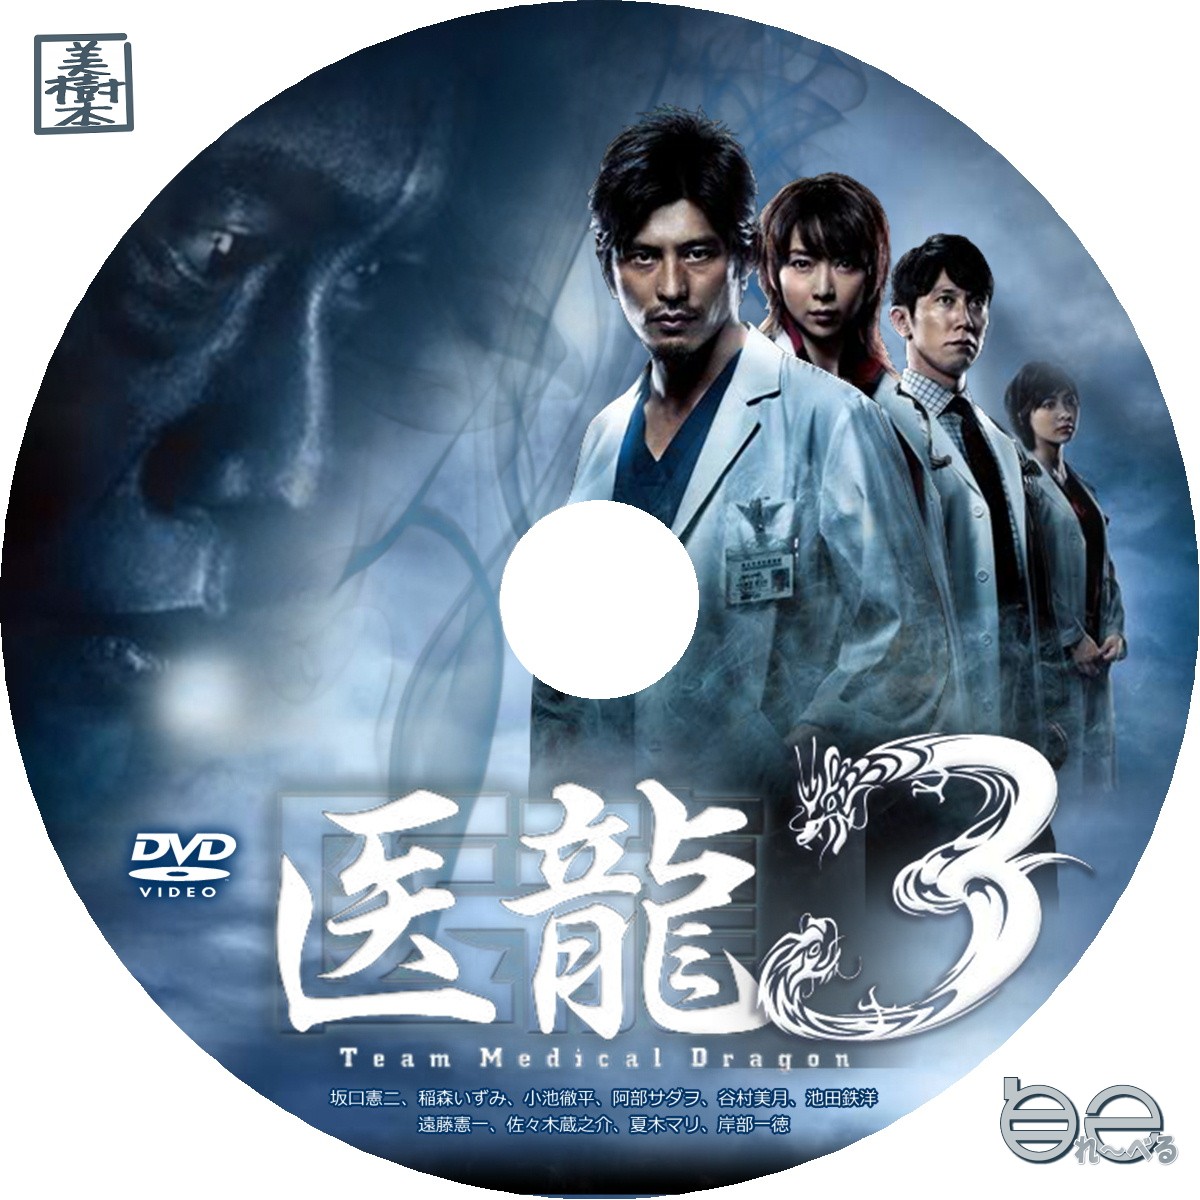 医龍 ~Team Medical Dragon~3 DVD-BOX studioarabiya.com